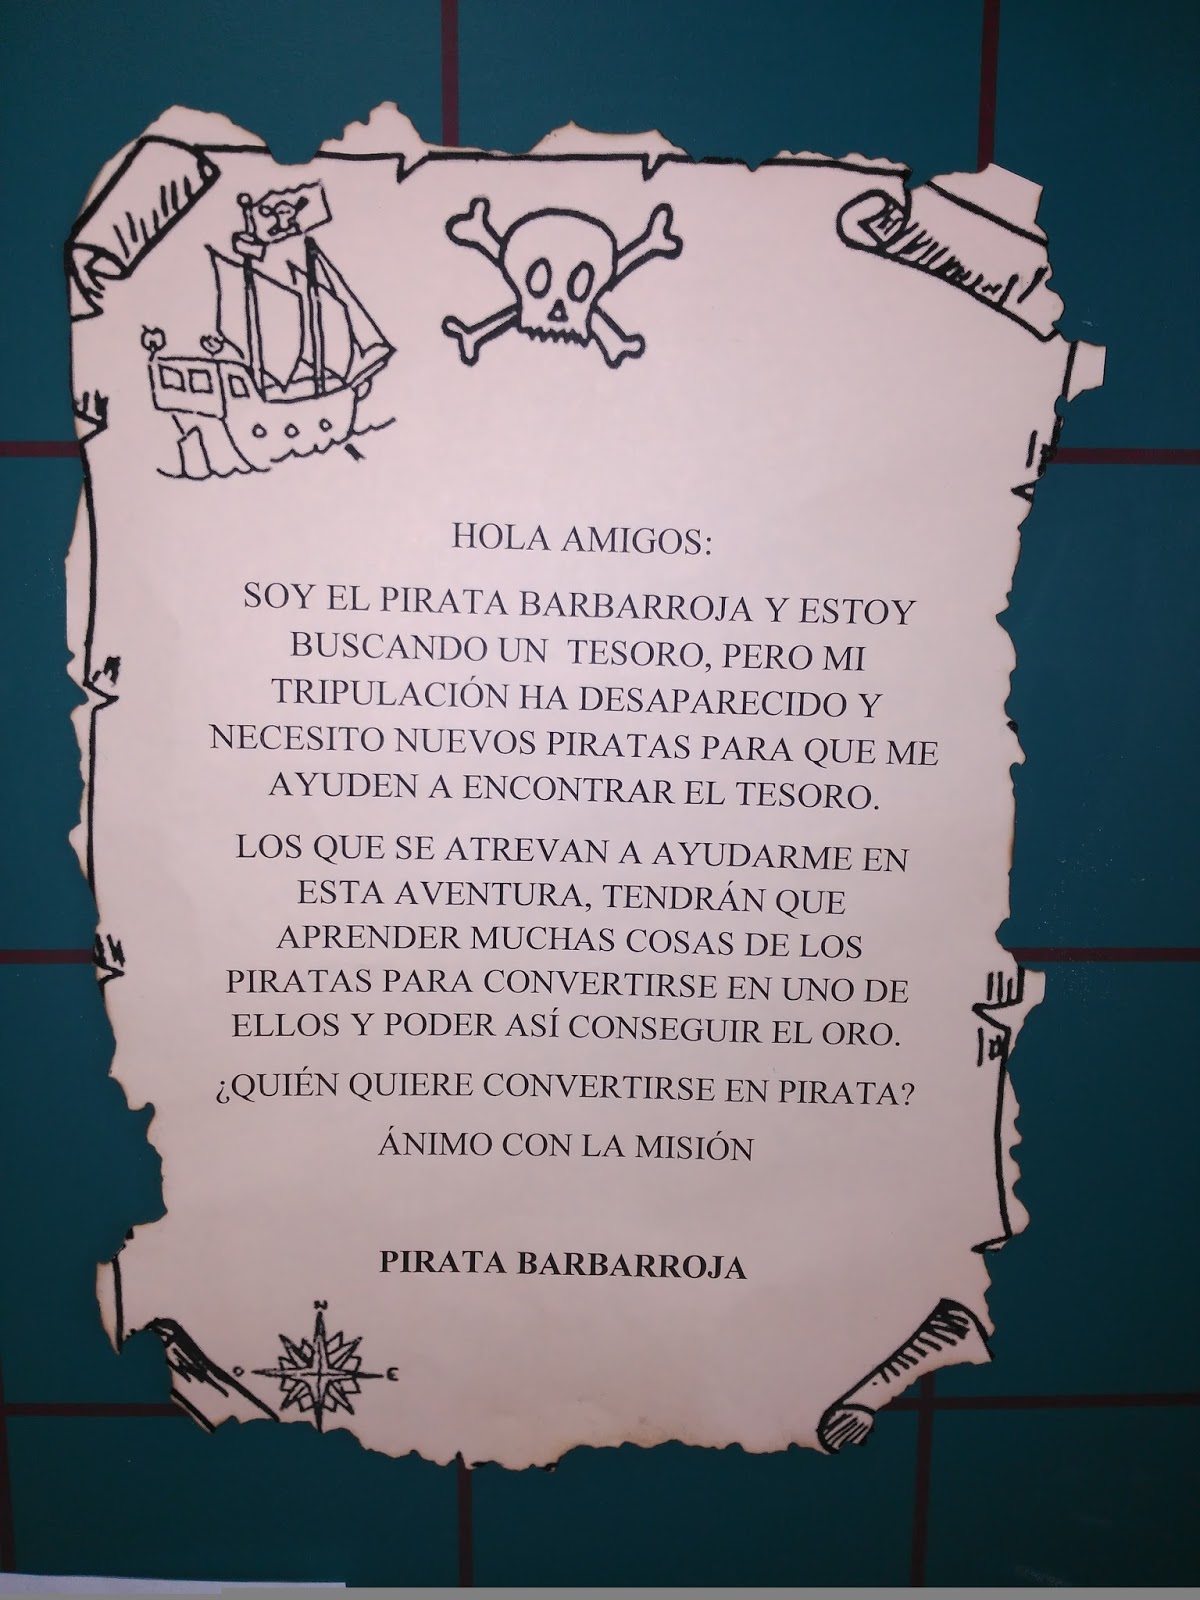 Uma carta para o pirata